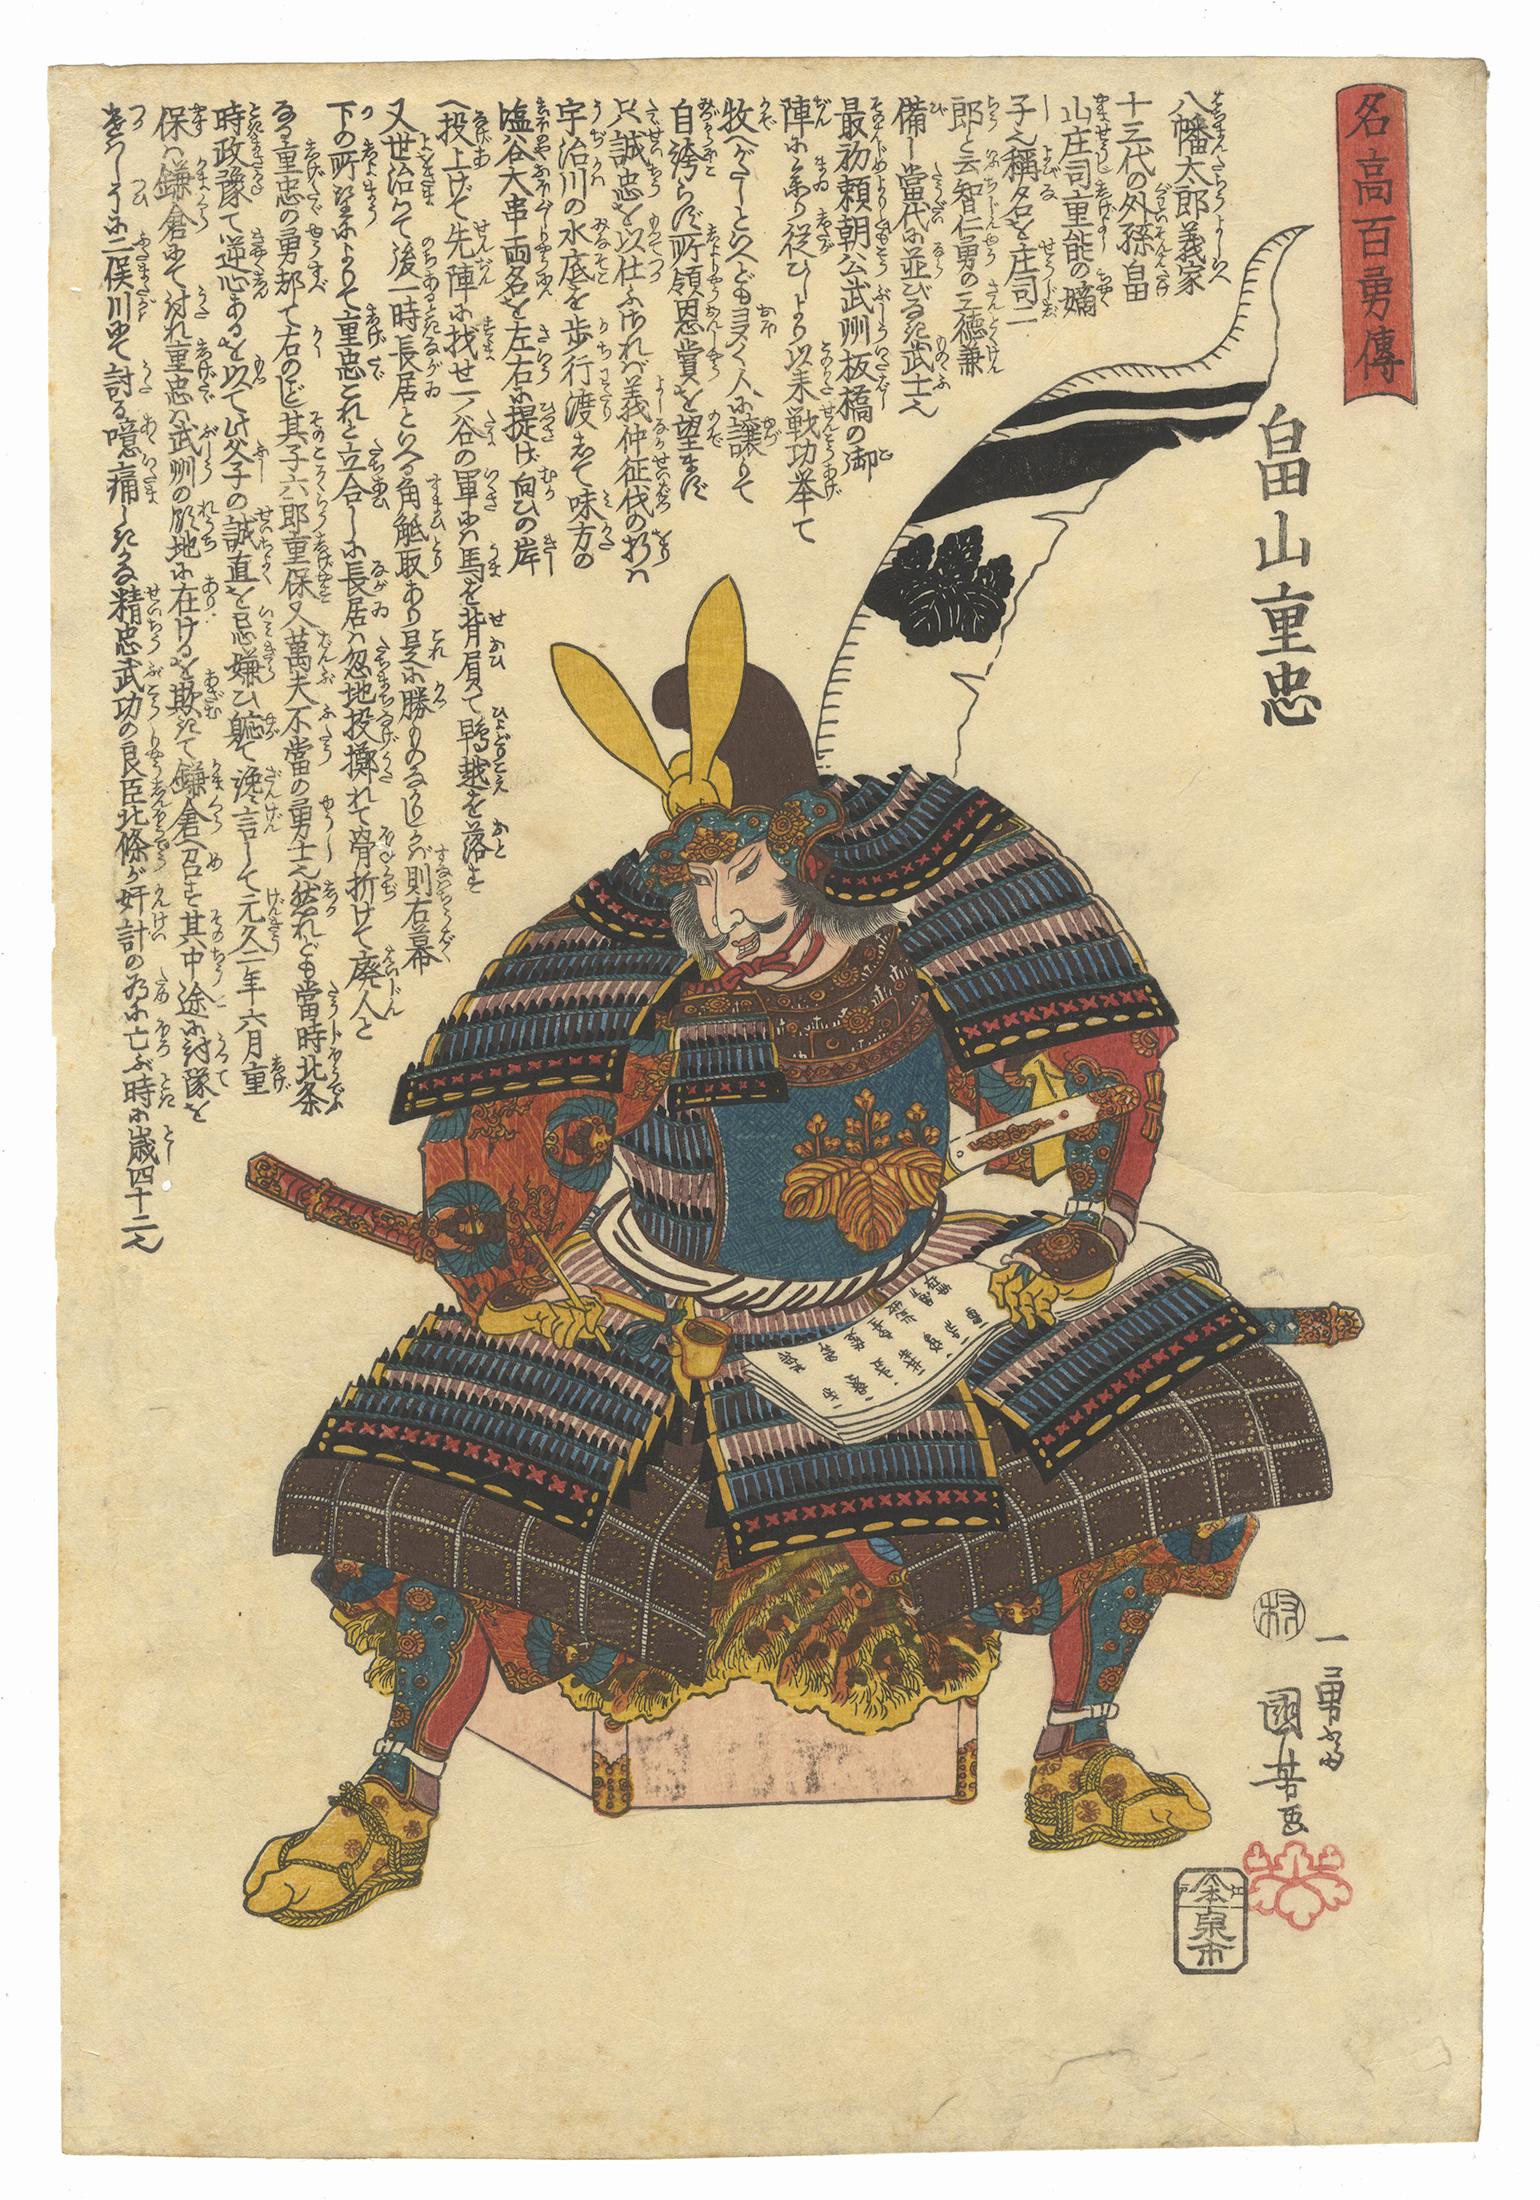 Utagawa Kuniyoshi Figurative Print - Kuniyoshi, Edo Era, Samurai Warrior, Original Japanese Woodblock Print, Ukiyo-e